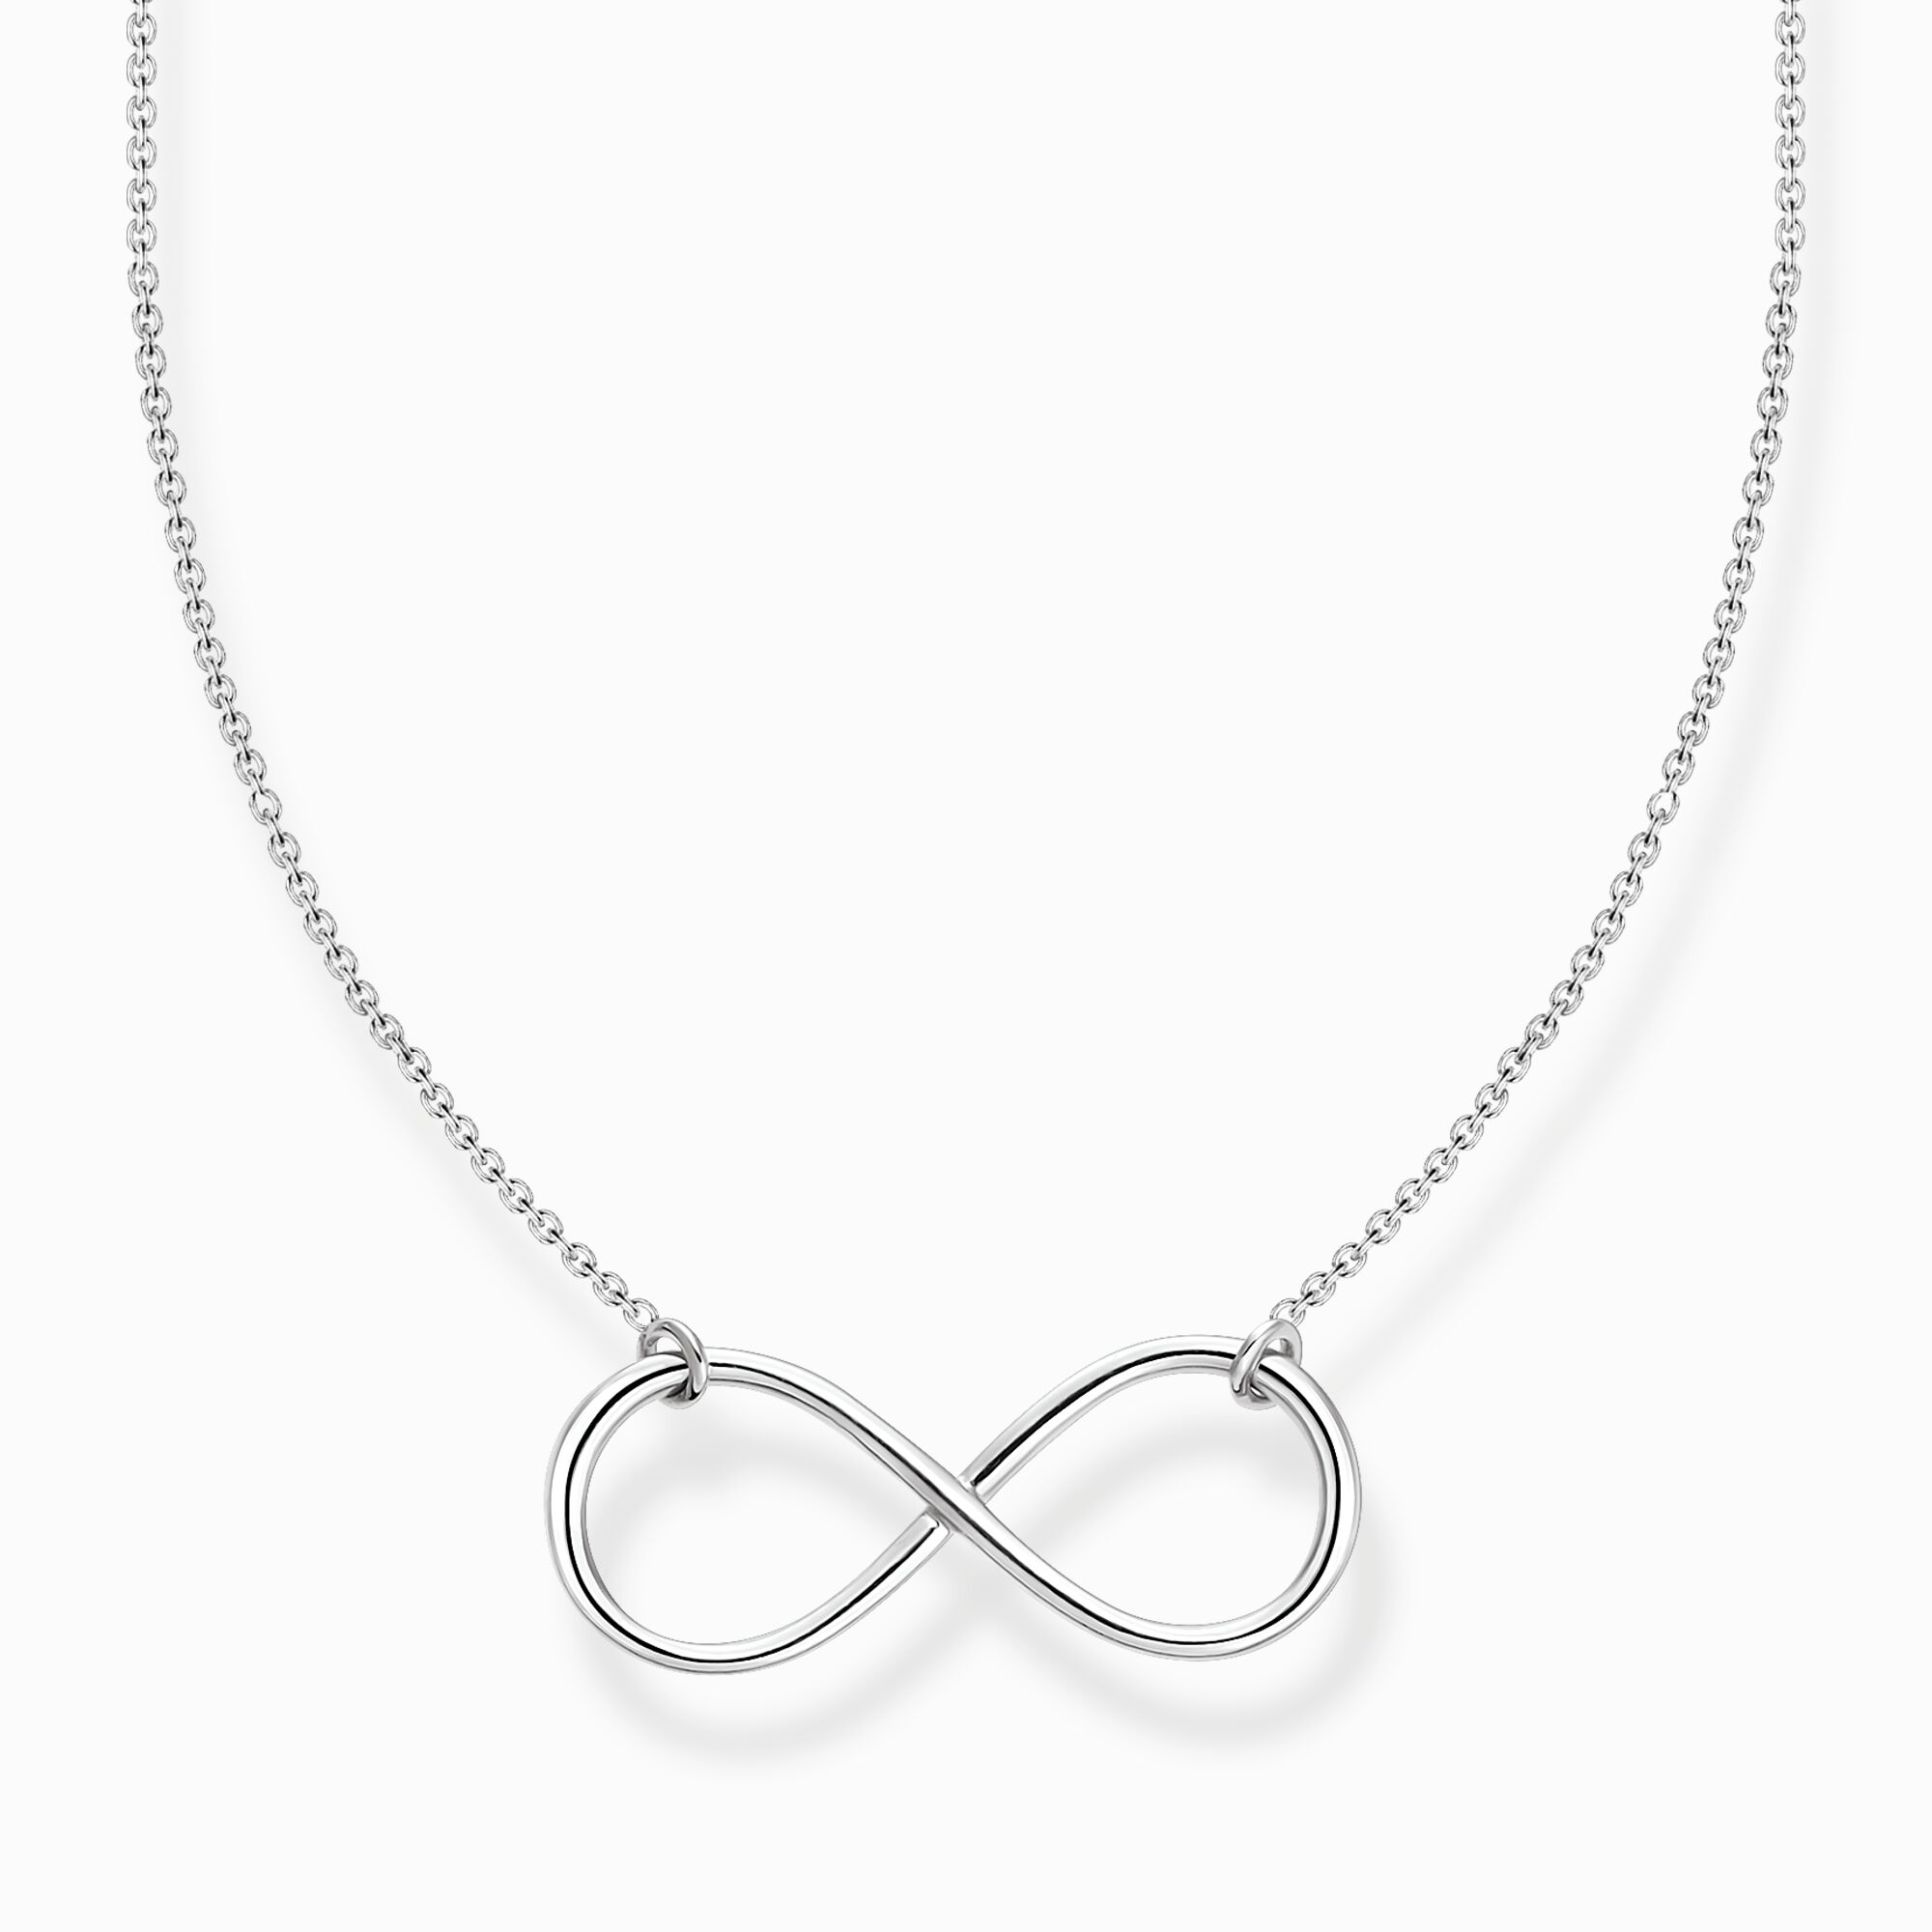 Cadena infinity plata de la colección Charming Collection en la tienda online de THOMAS SABO